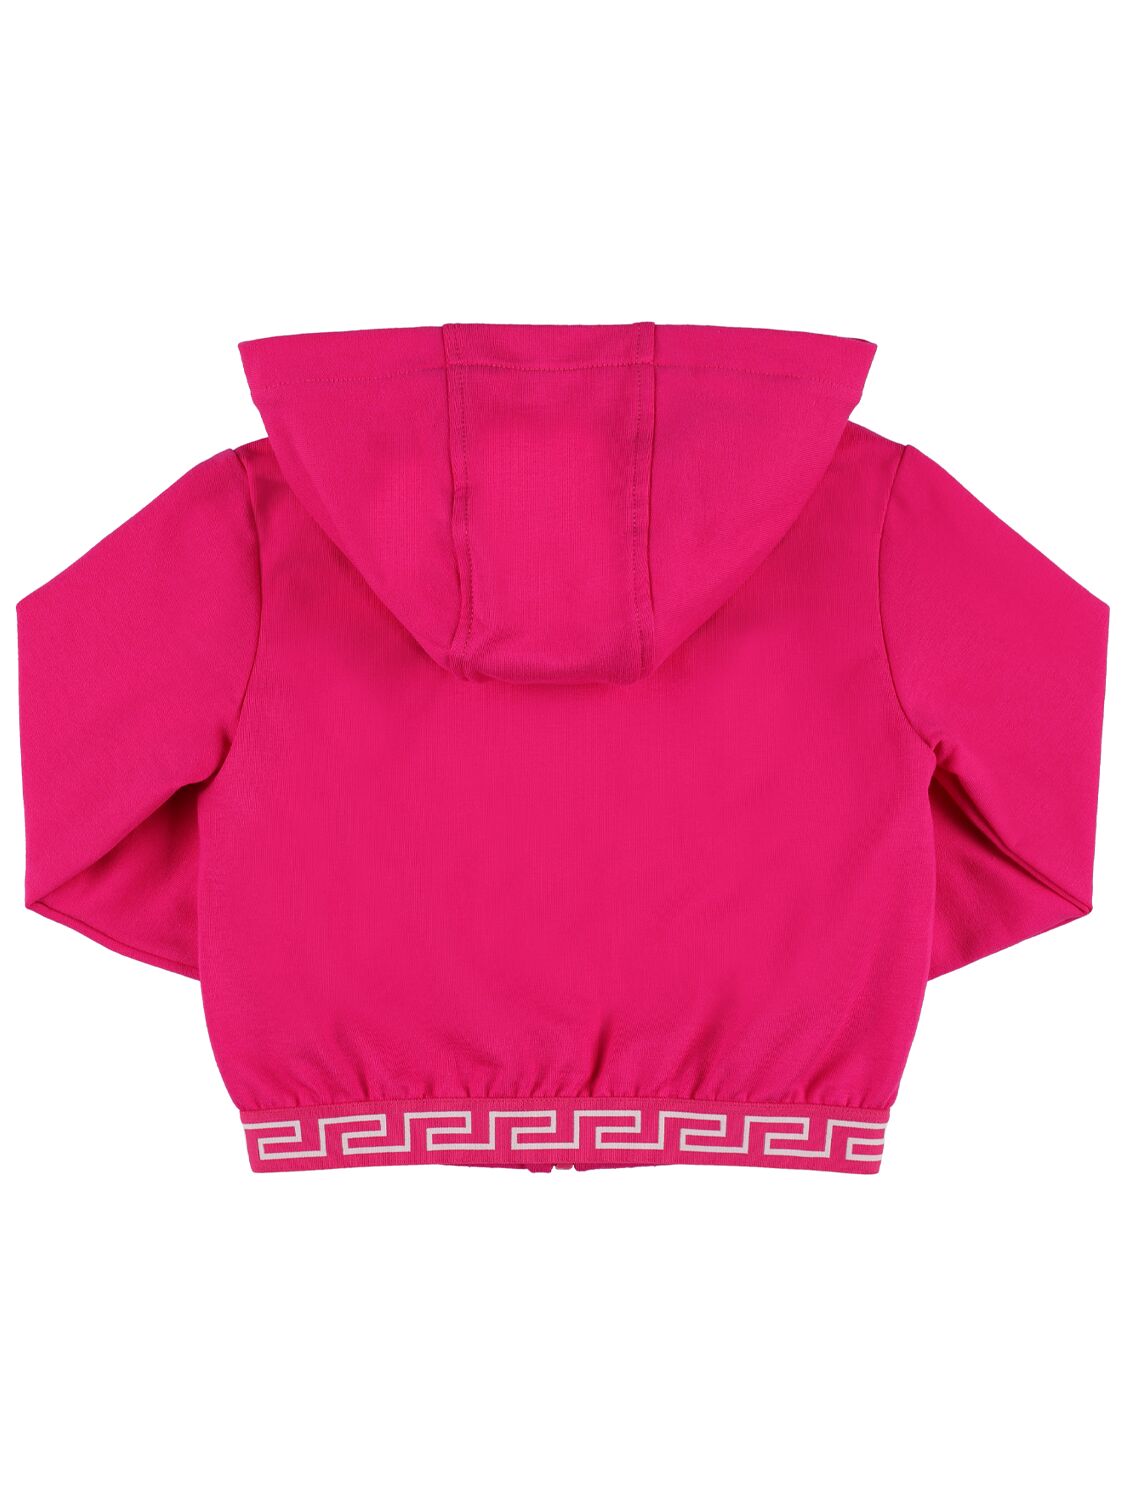 Shop Versace Embroidered Cotton Blend Sweatshirt In Fuchsia